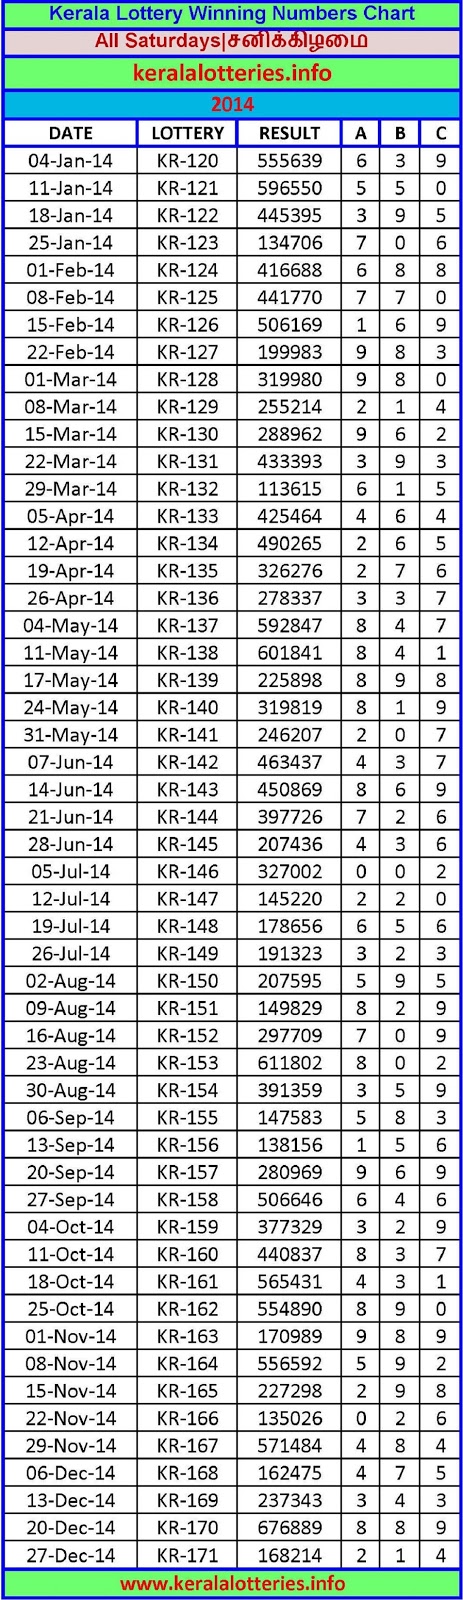 Lottery Chart 2013